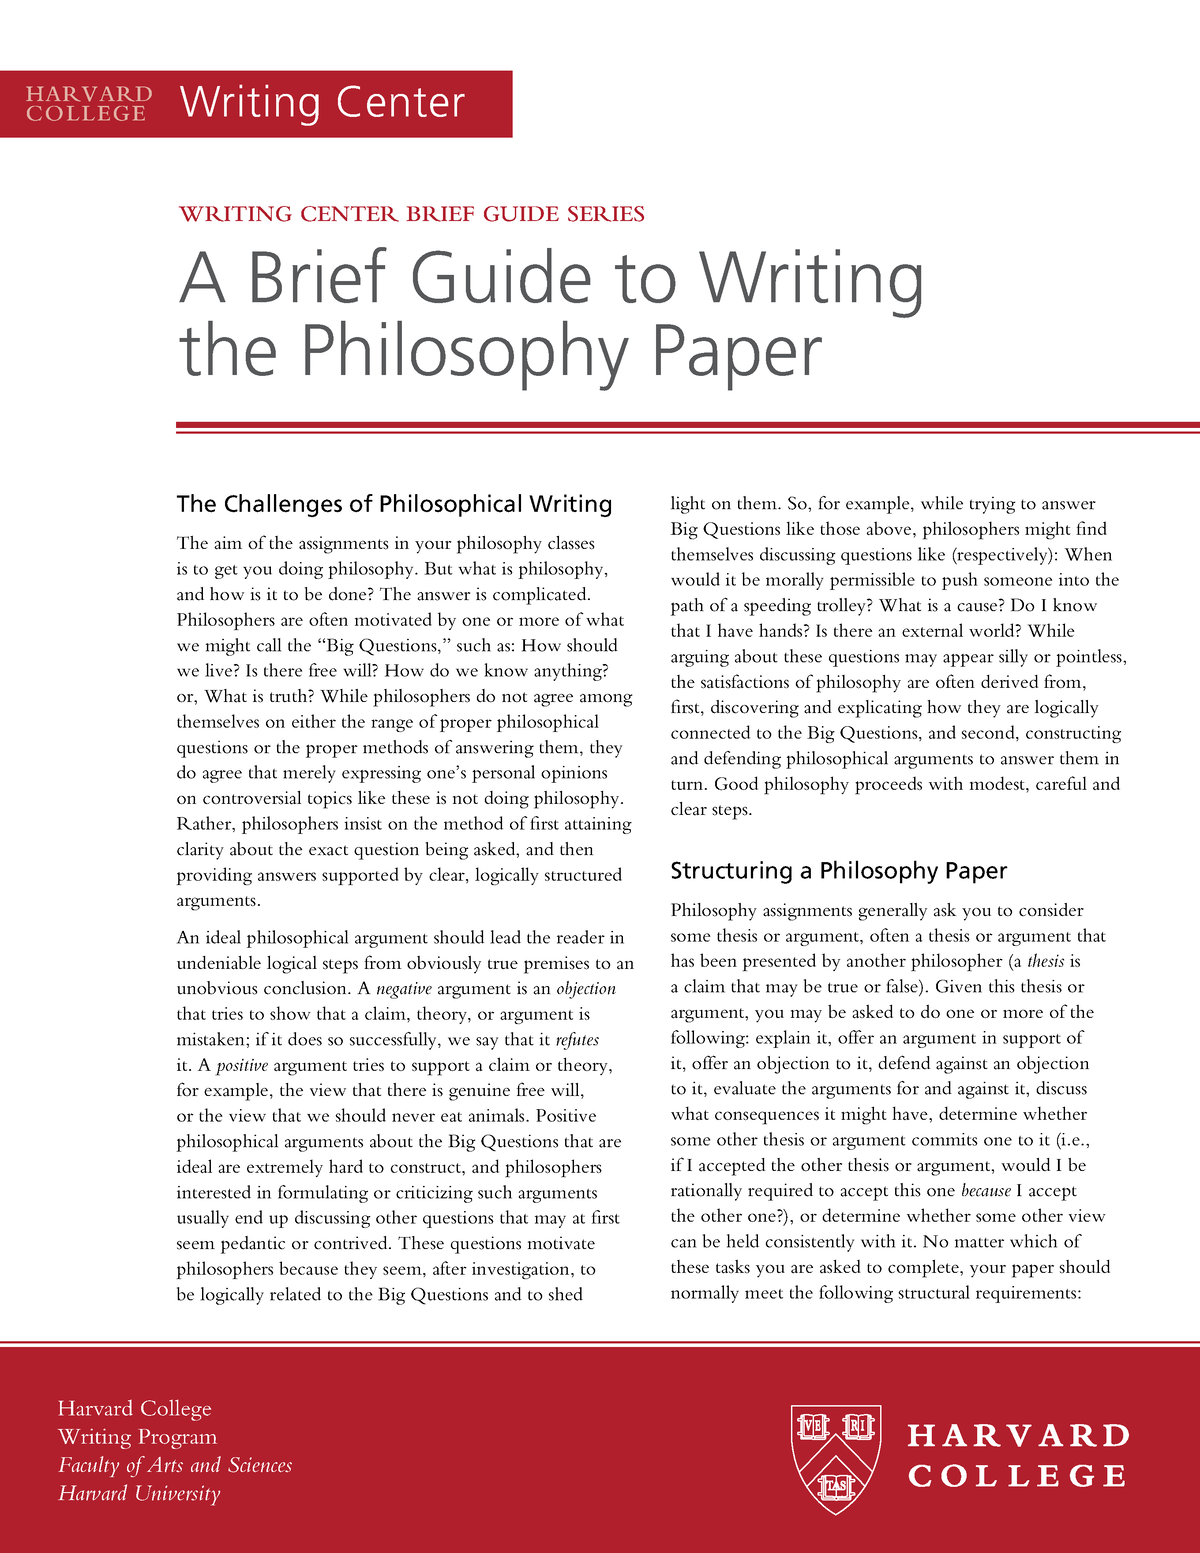 philosophy undergraduate thesis topics